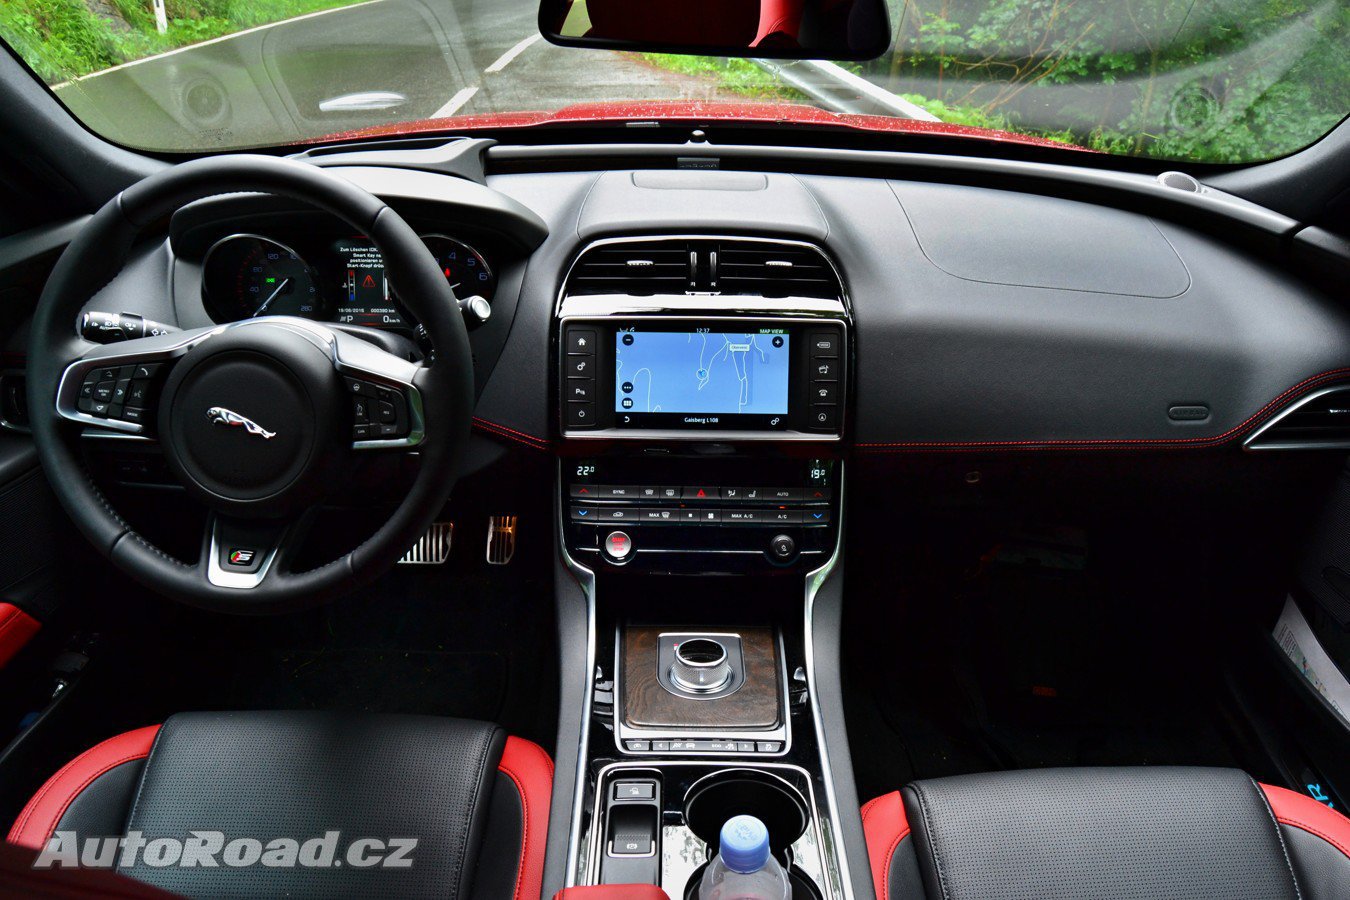 Jaguar XE S 3,0 V6 340 koní (2015)